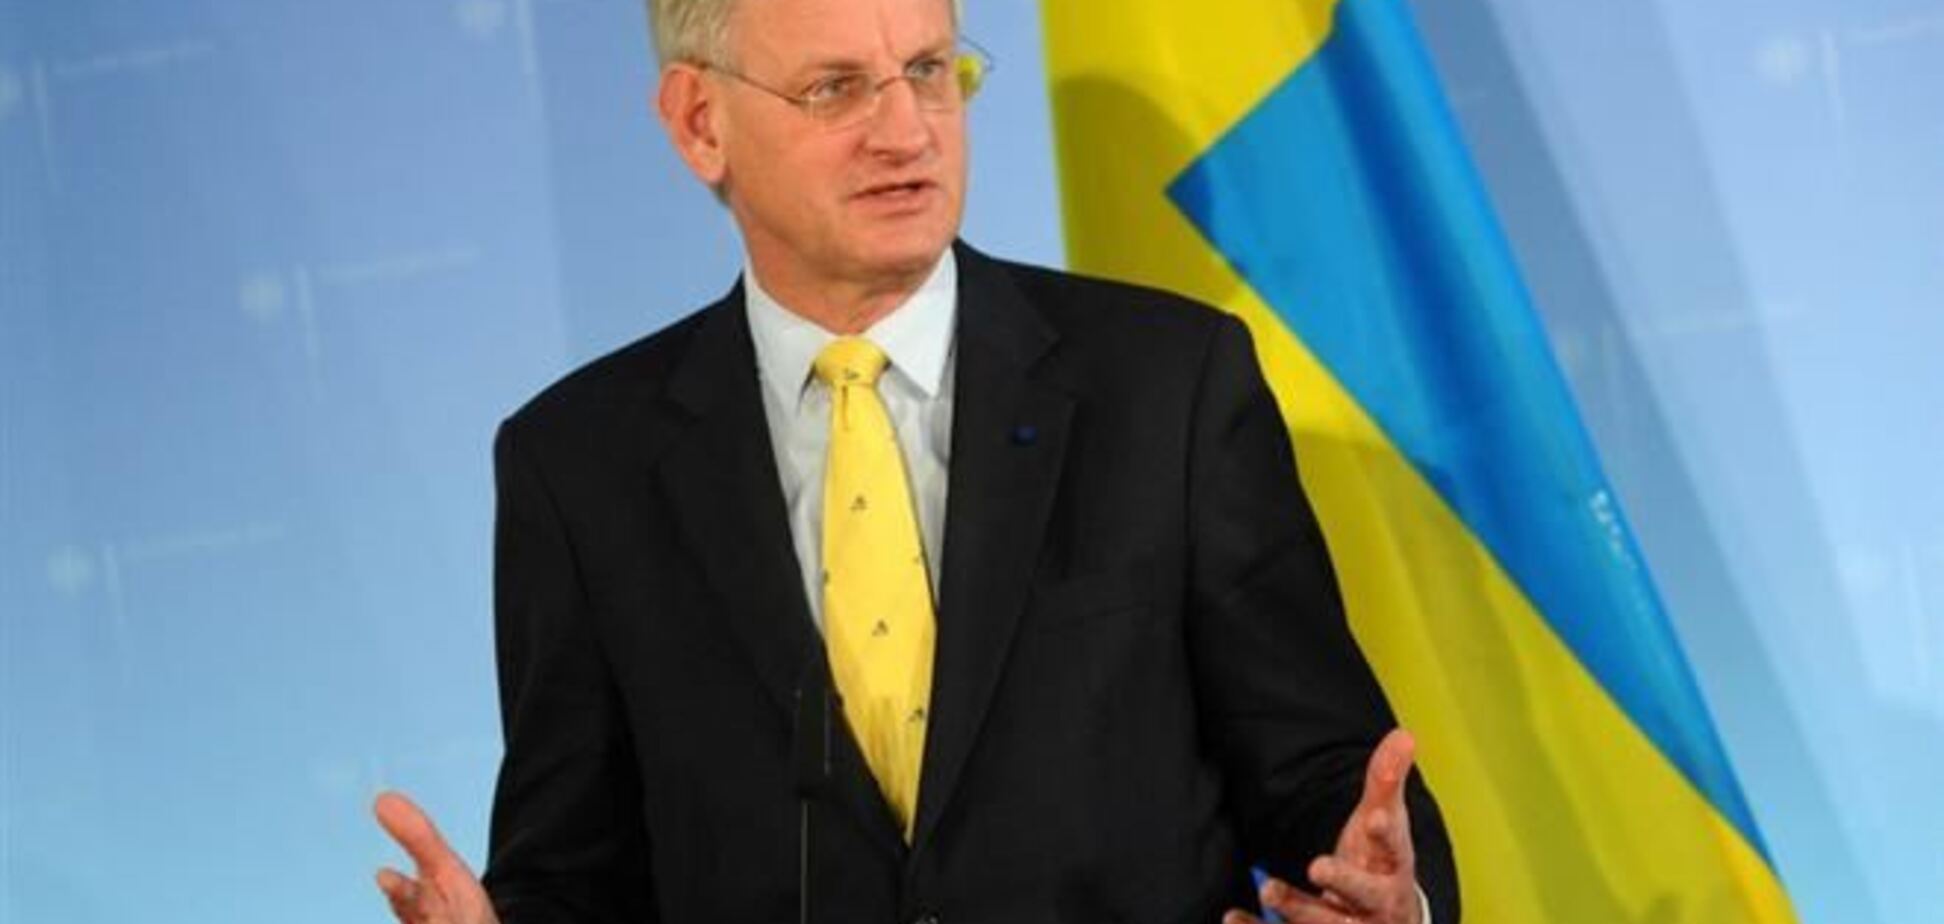 Бильдт: ЕС думает над тем, как помочь Украине встать на ноги